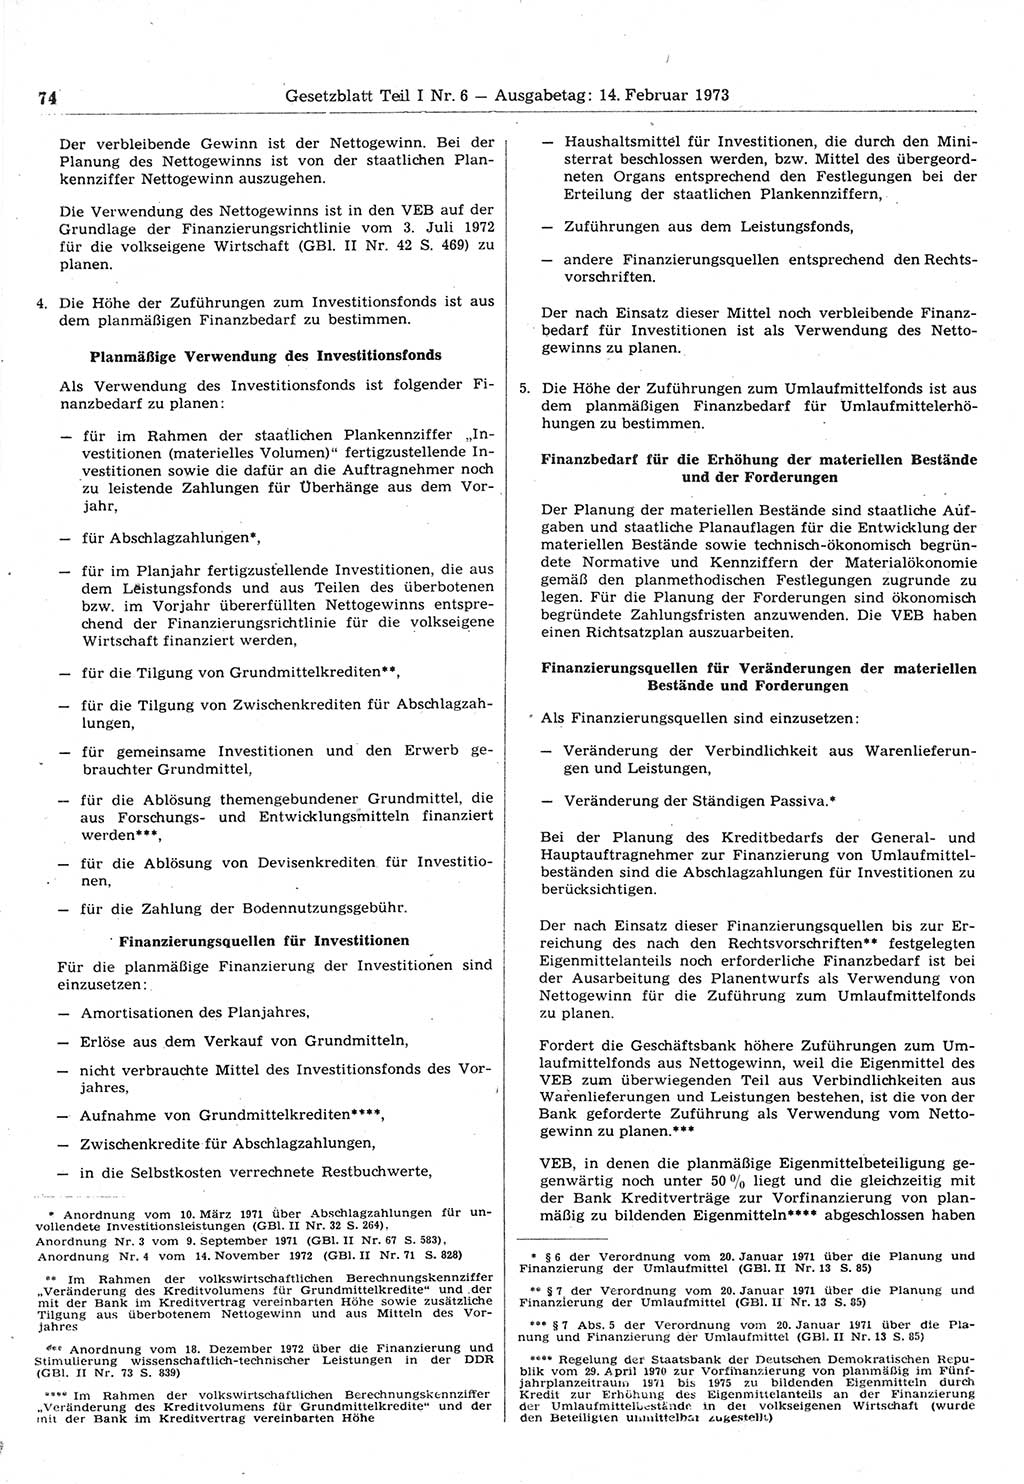 Gesetzblatt (GBl.) der Deutschen Demokratischen Republik (DDR) Teil Ⅰ 1973, Seite 74 (GBl. DDR Ⅰ 1973, S. 74)